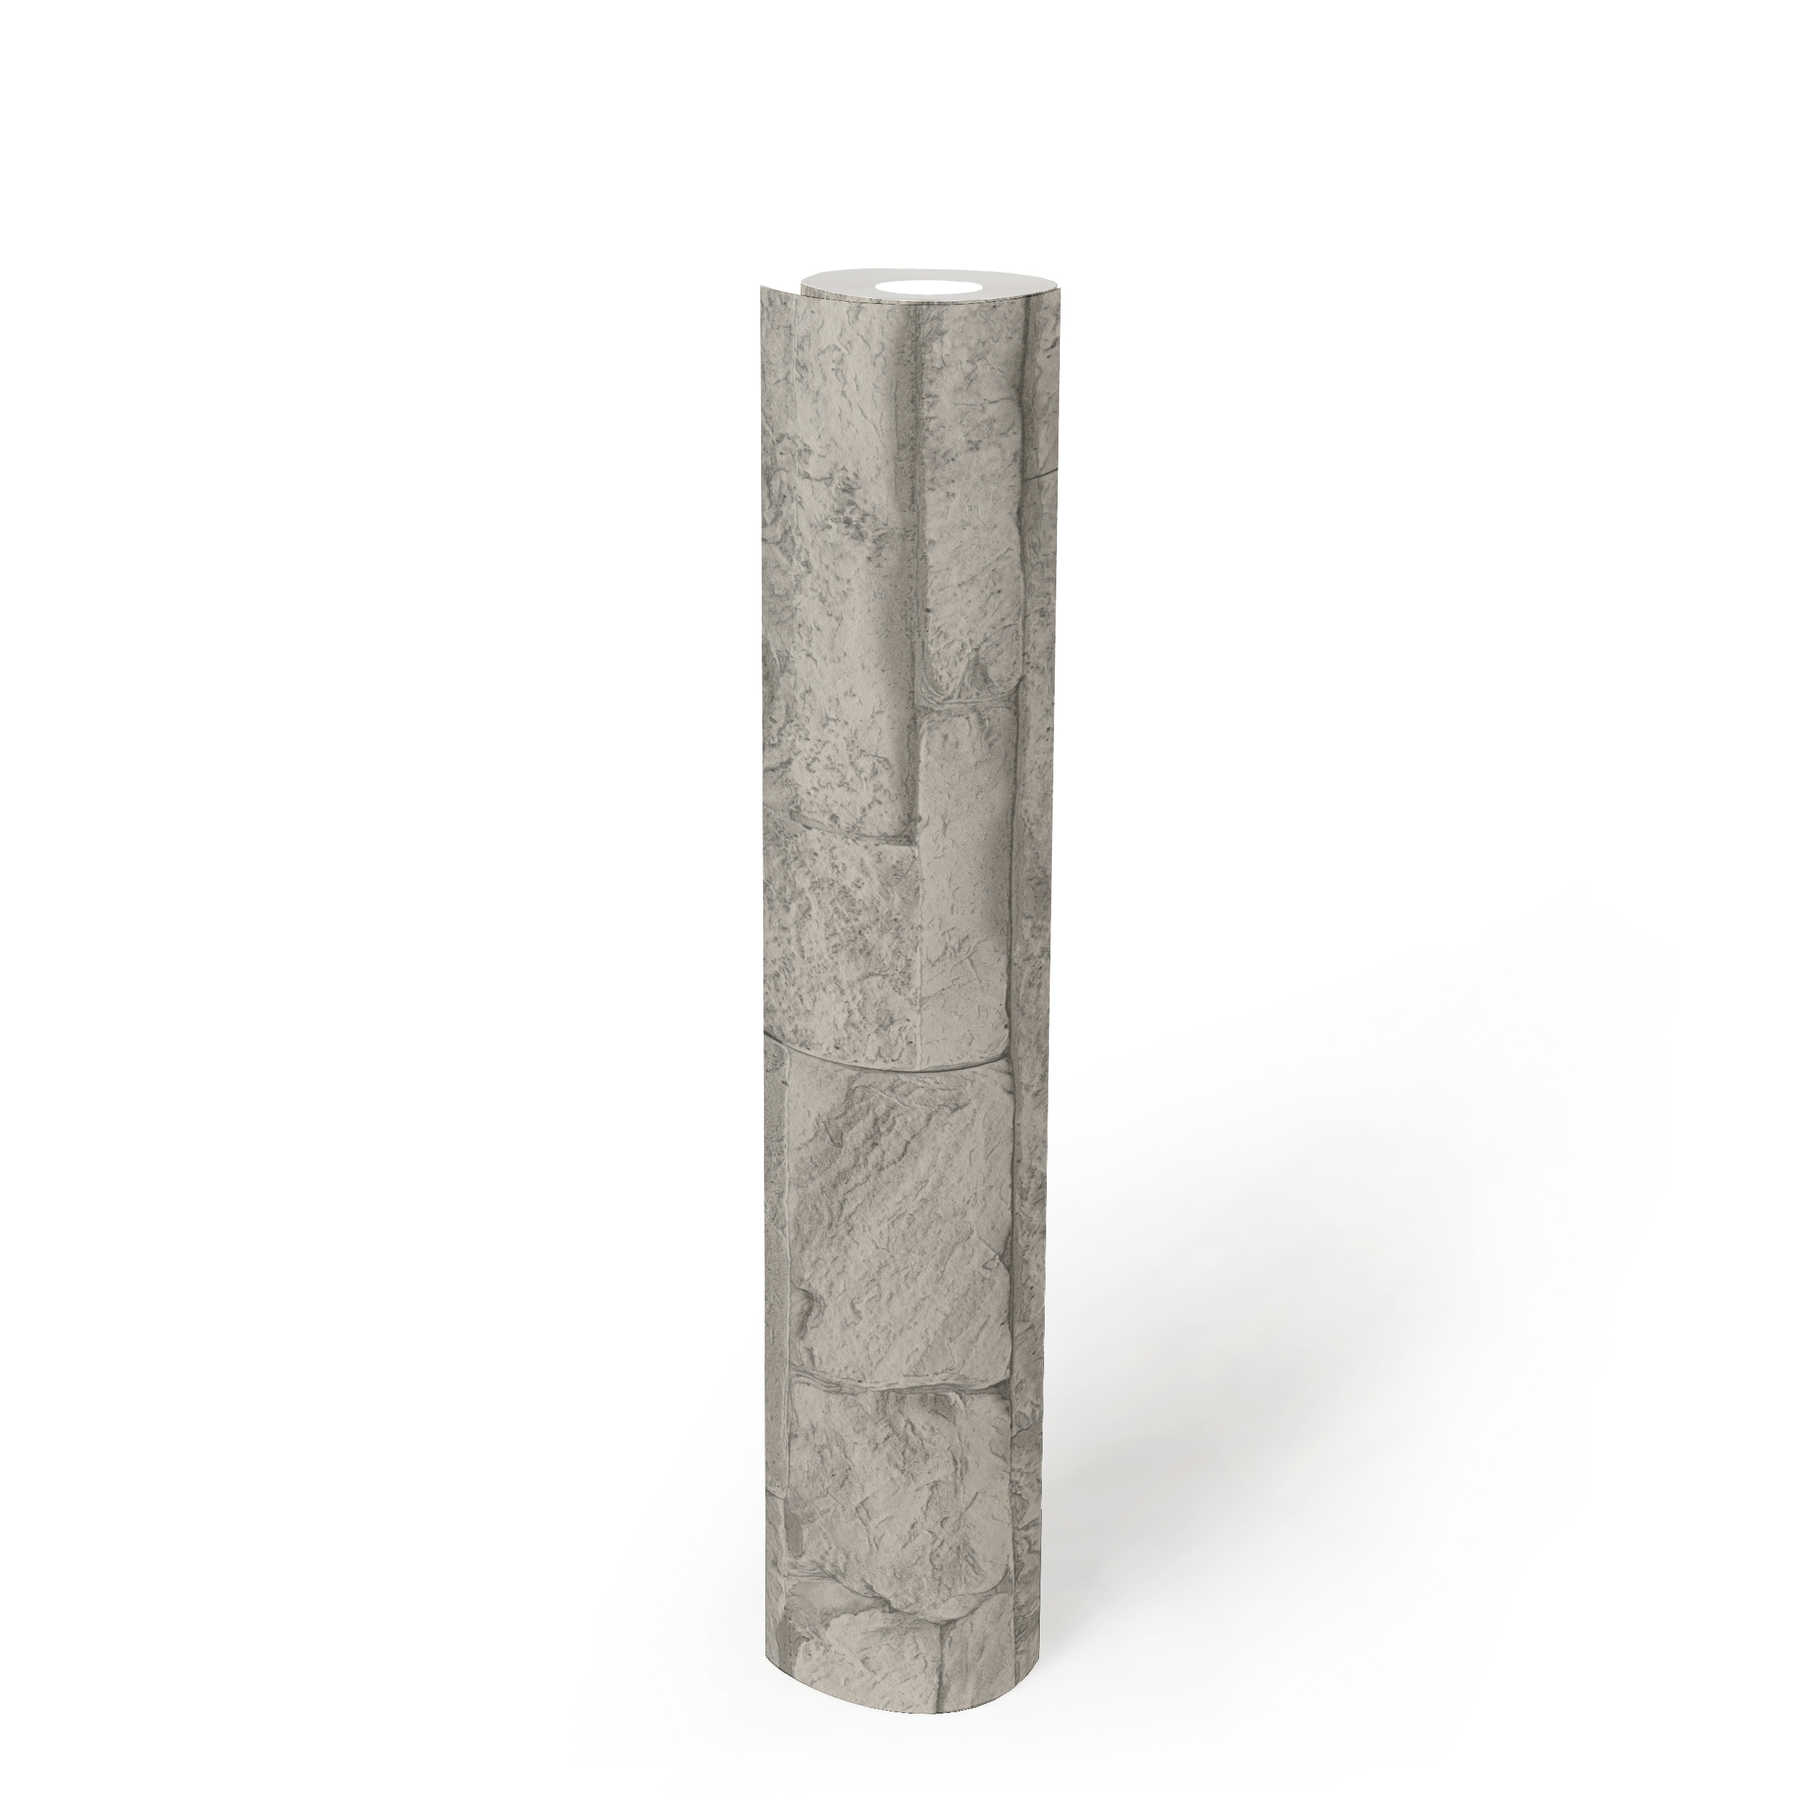             Papier peint imitation pierre naturelle détaillé & réaliste - gris, blanc
        